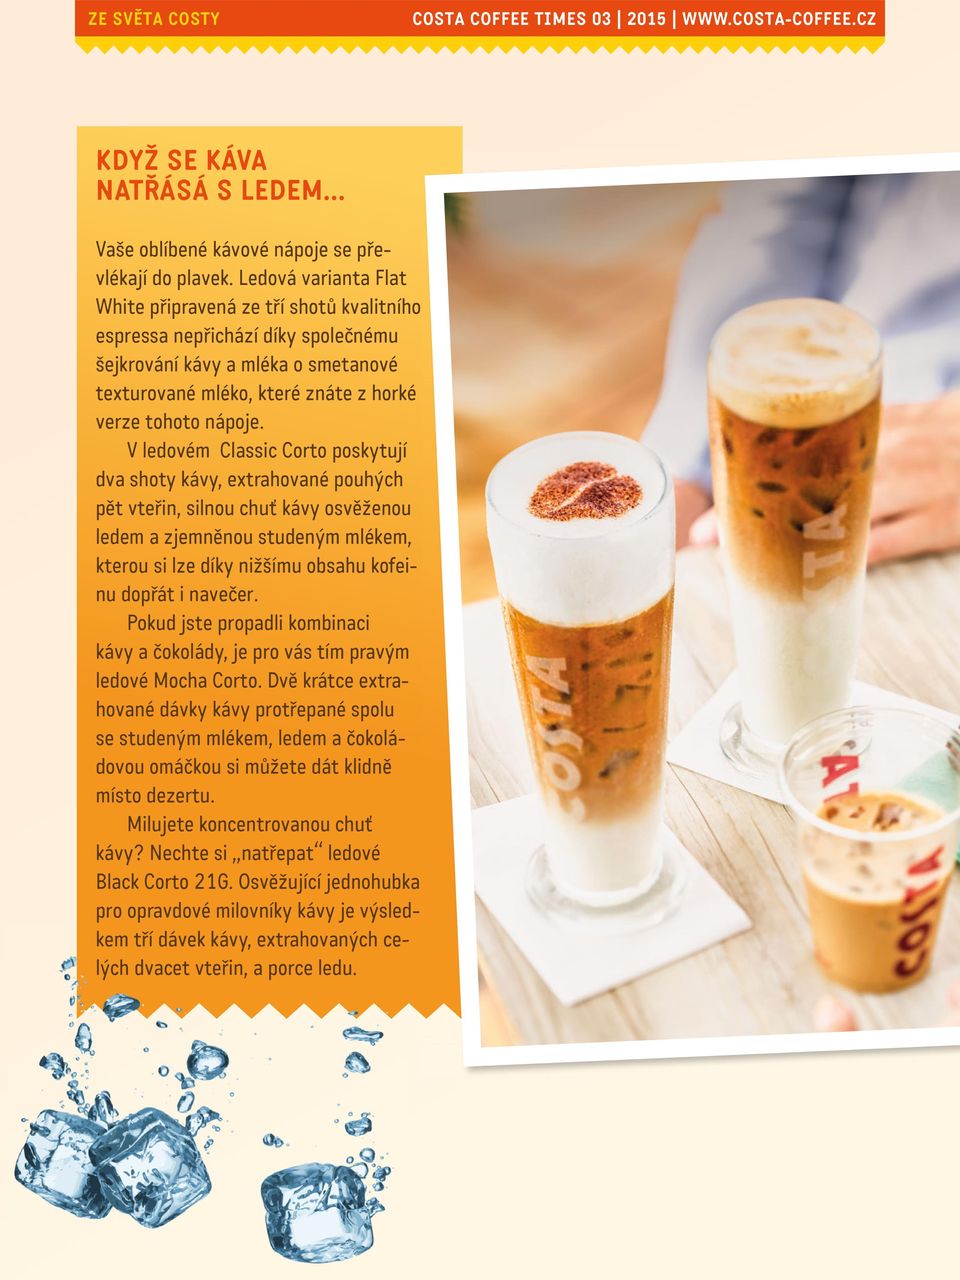 V ledovém Classic Corto poskytují dva shoty kávy, extrahované pouhých pět vteřin, silnou chuť kávy osvěženou ledem a zjemněnou studeným mlékem, kterou si lze díky nižšímu obsahu kofeinu dopřát i